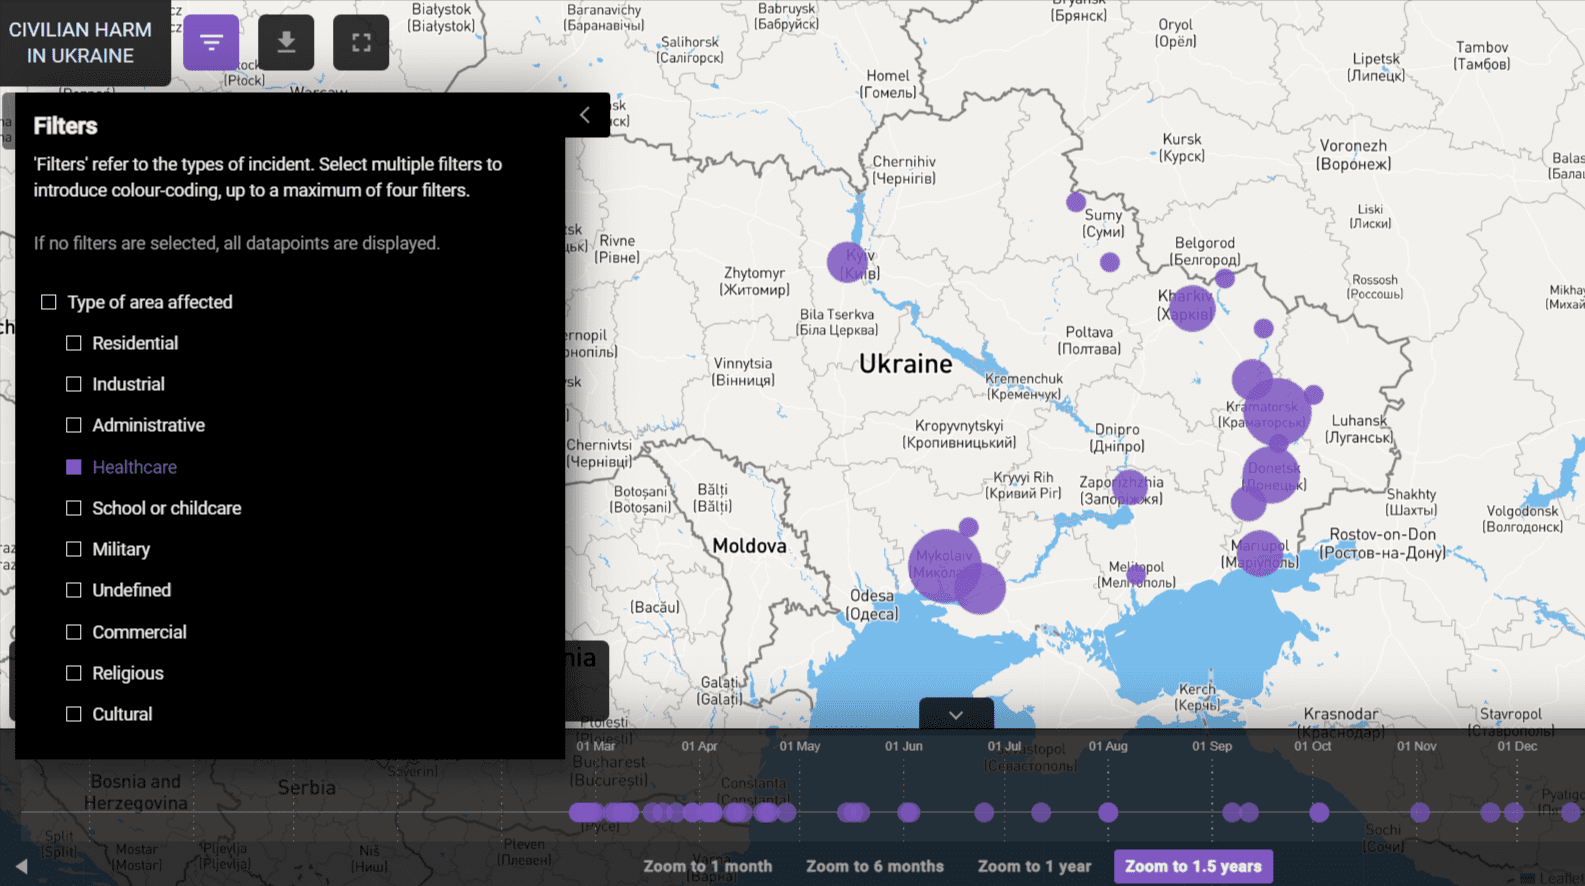 Zrzut ekranu mapy opracowanej przez Bellingcat ze zniszczeniami różnych obiektów na terenie Ukrainy w czasie rosyjskiej inwazji.